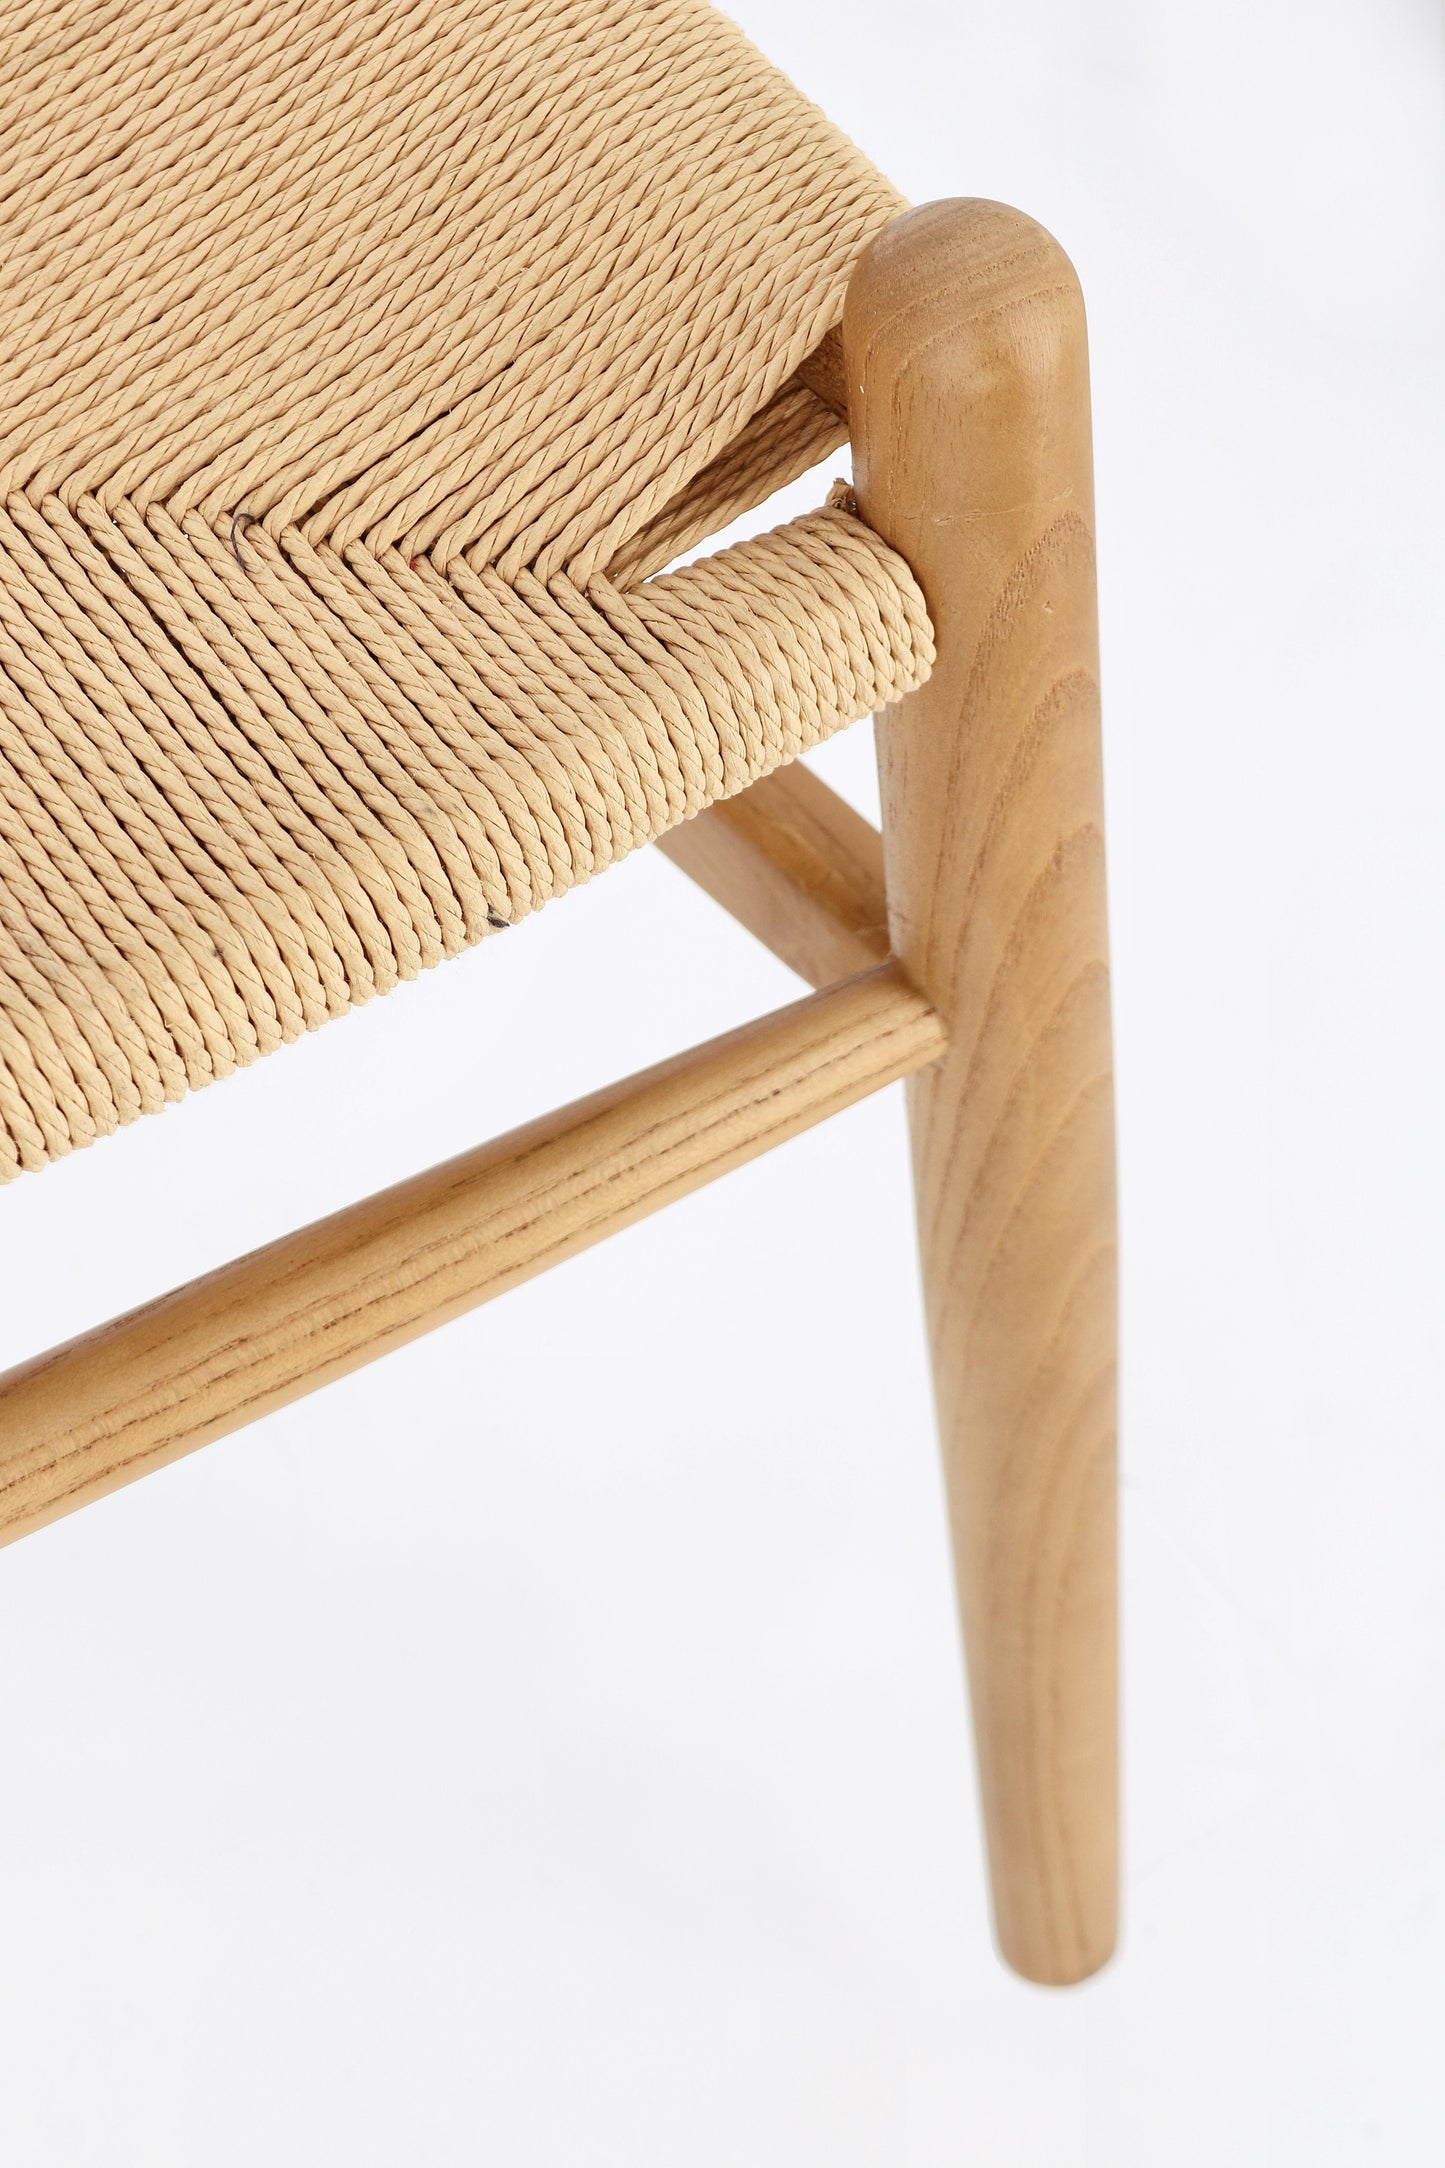 Sedia impagliata in legno massiccio stile design rustico